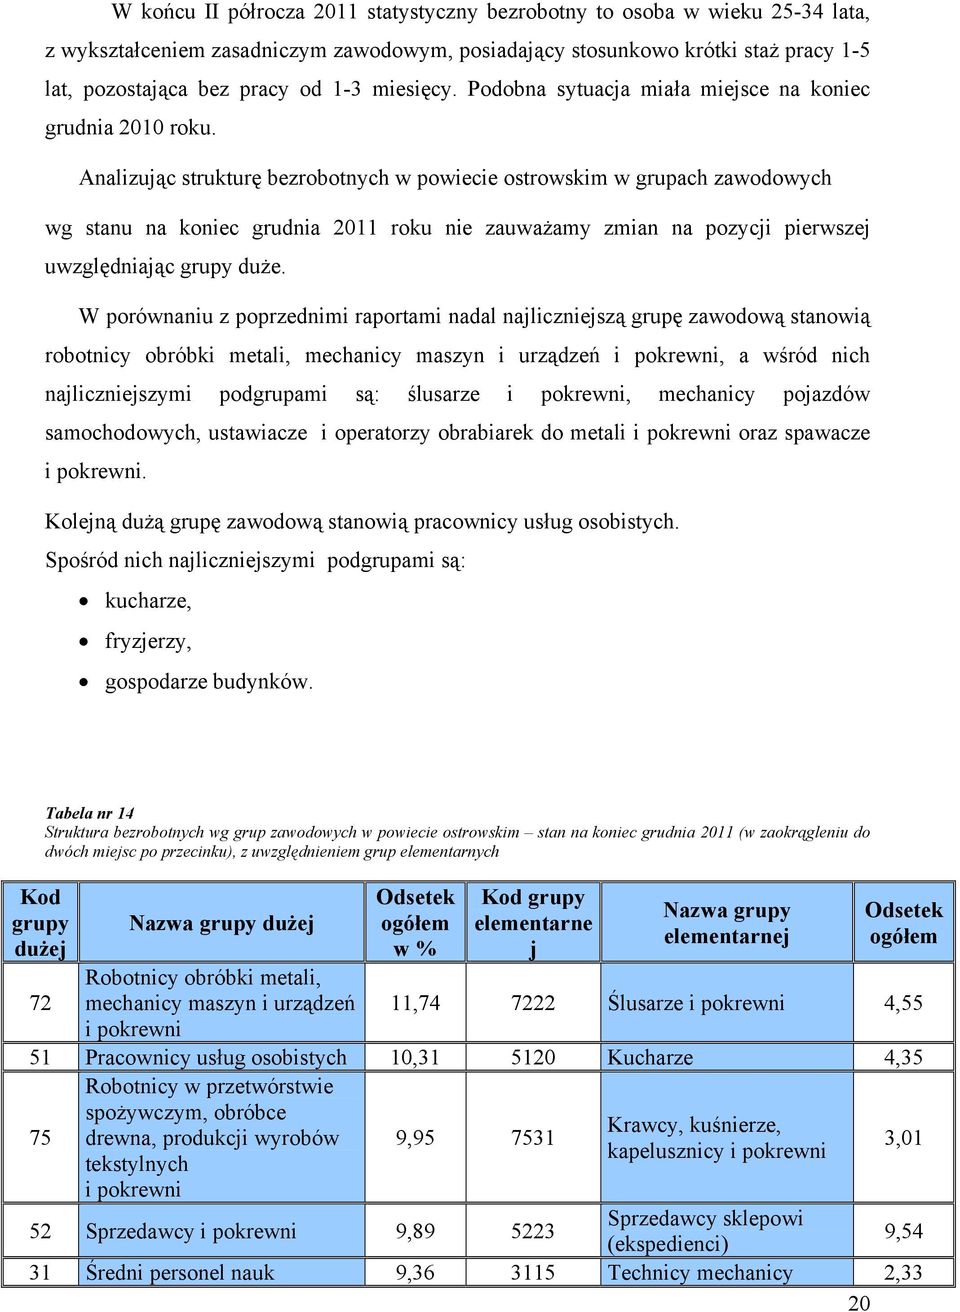 Analizując strukturę bezrobotnych w powiecie ostrowskim w grupach zawodowych wg stanu na koniec grudnia 2011 roku nie zauważamy zmian na pozycji pierwszej uwzględniając grupy duże.